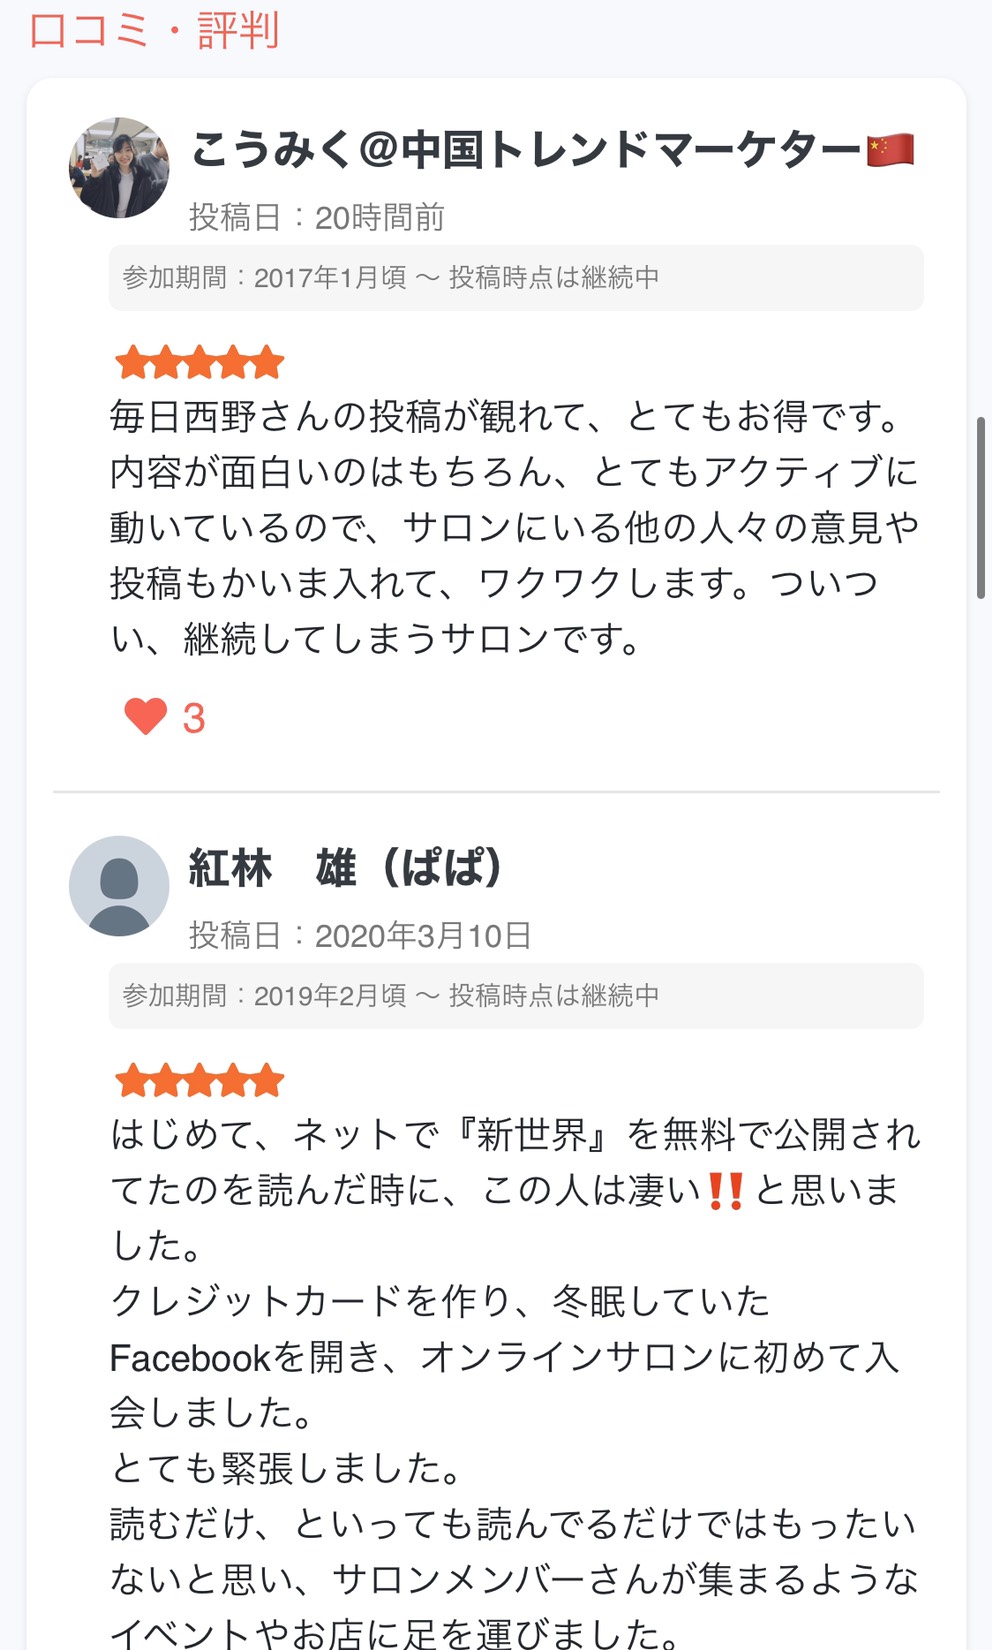 【みんなのオンラインサロン】日本最大級のオンラインサロン検索&口コミサイト